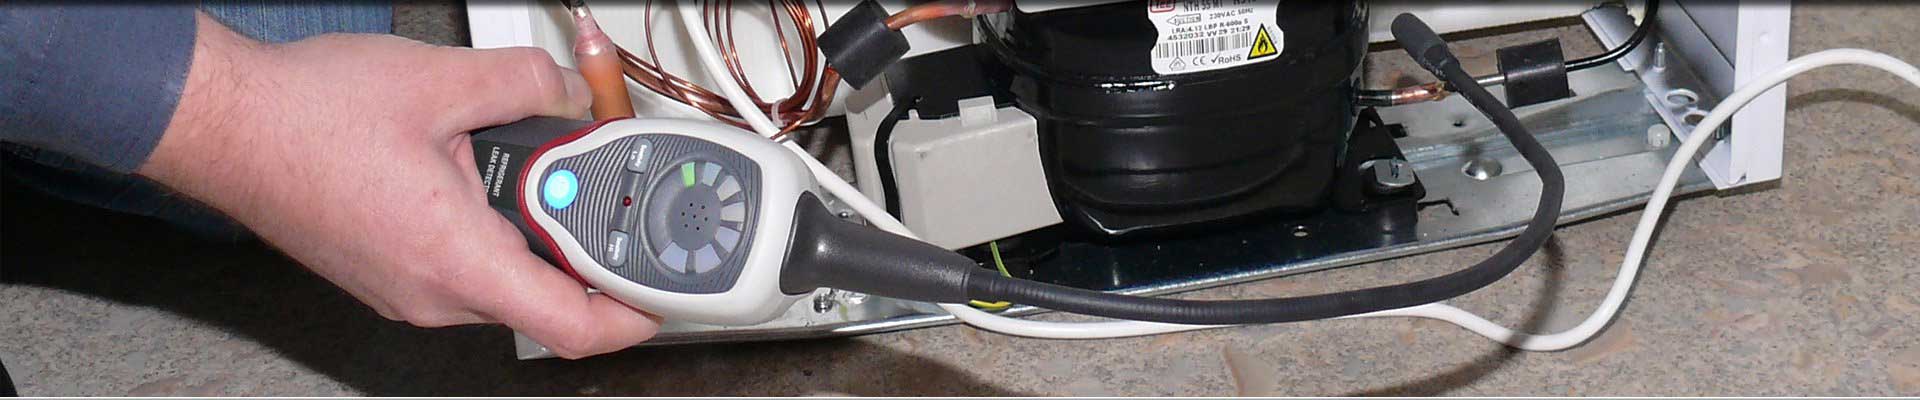 Détecteur de fuite de gaz sans fil - DIXYS Distributeur & Importateur  spécialisé sûreté